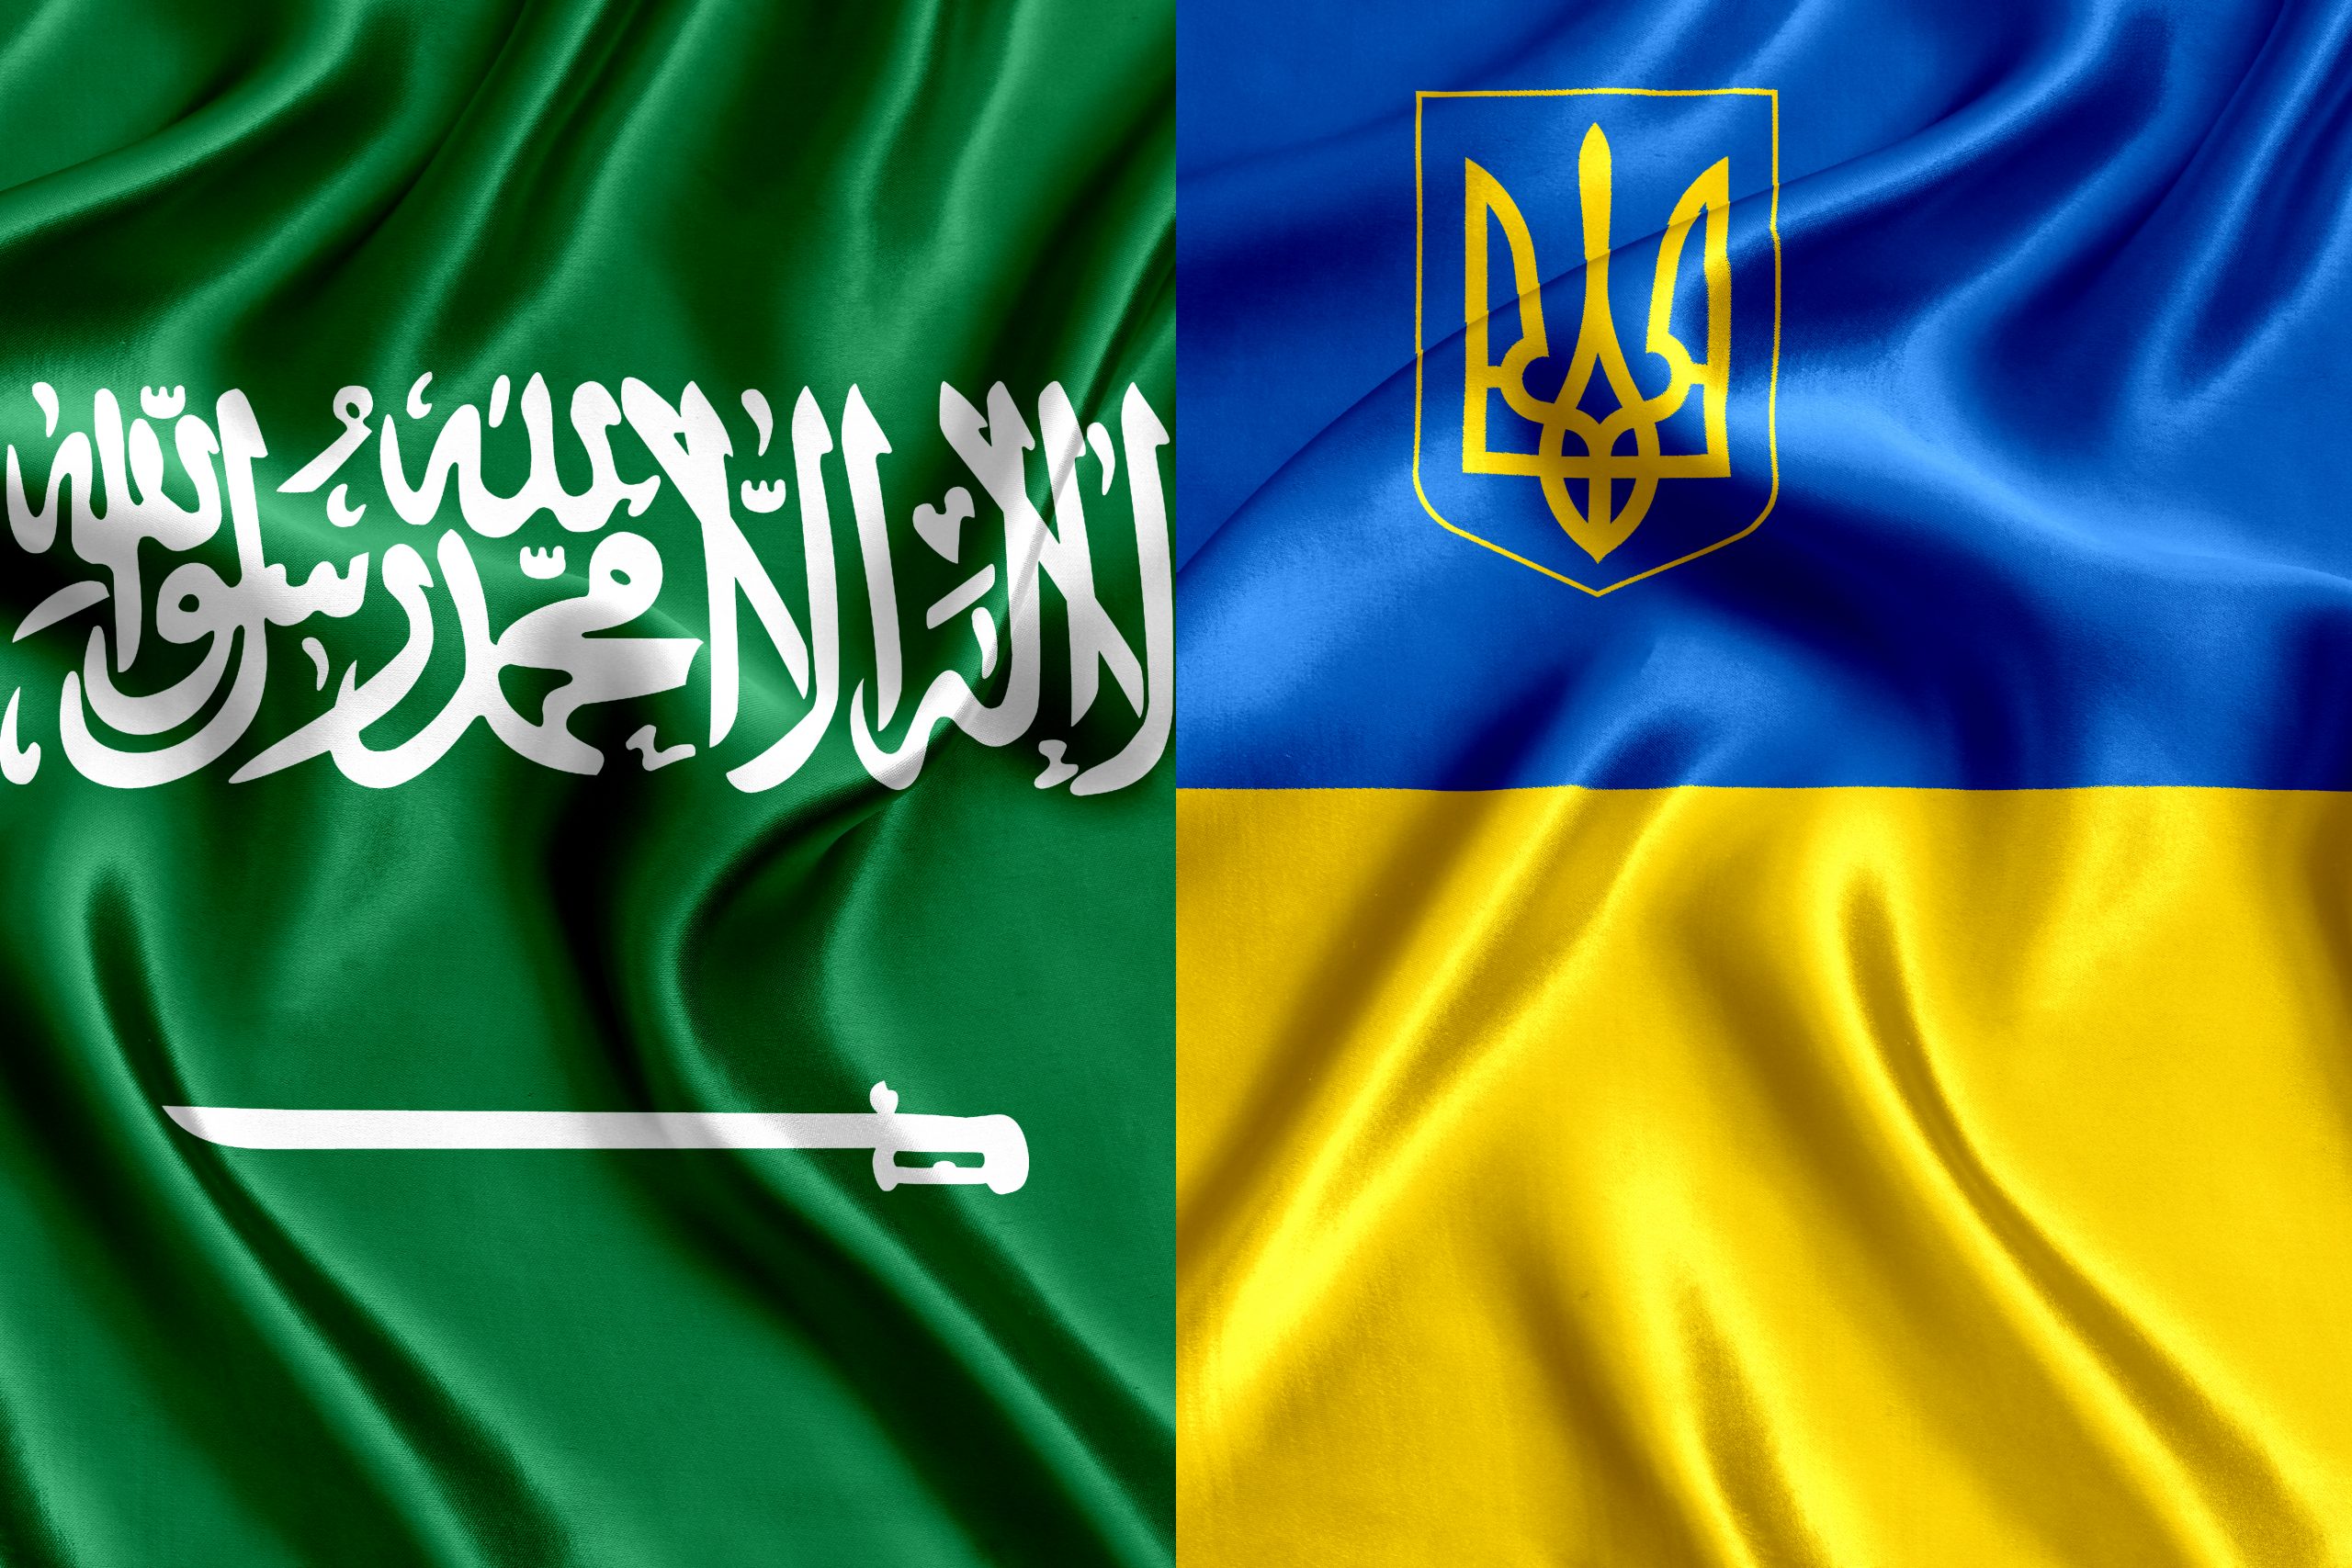 Saudi Arabia and Ukraine